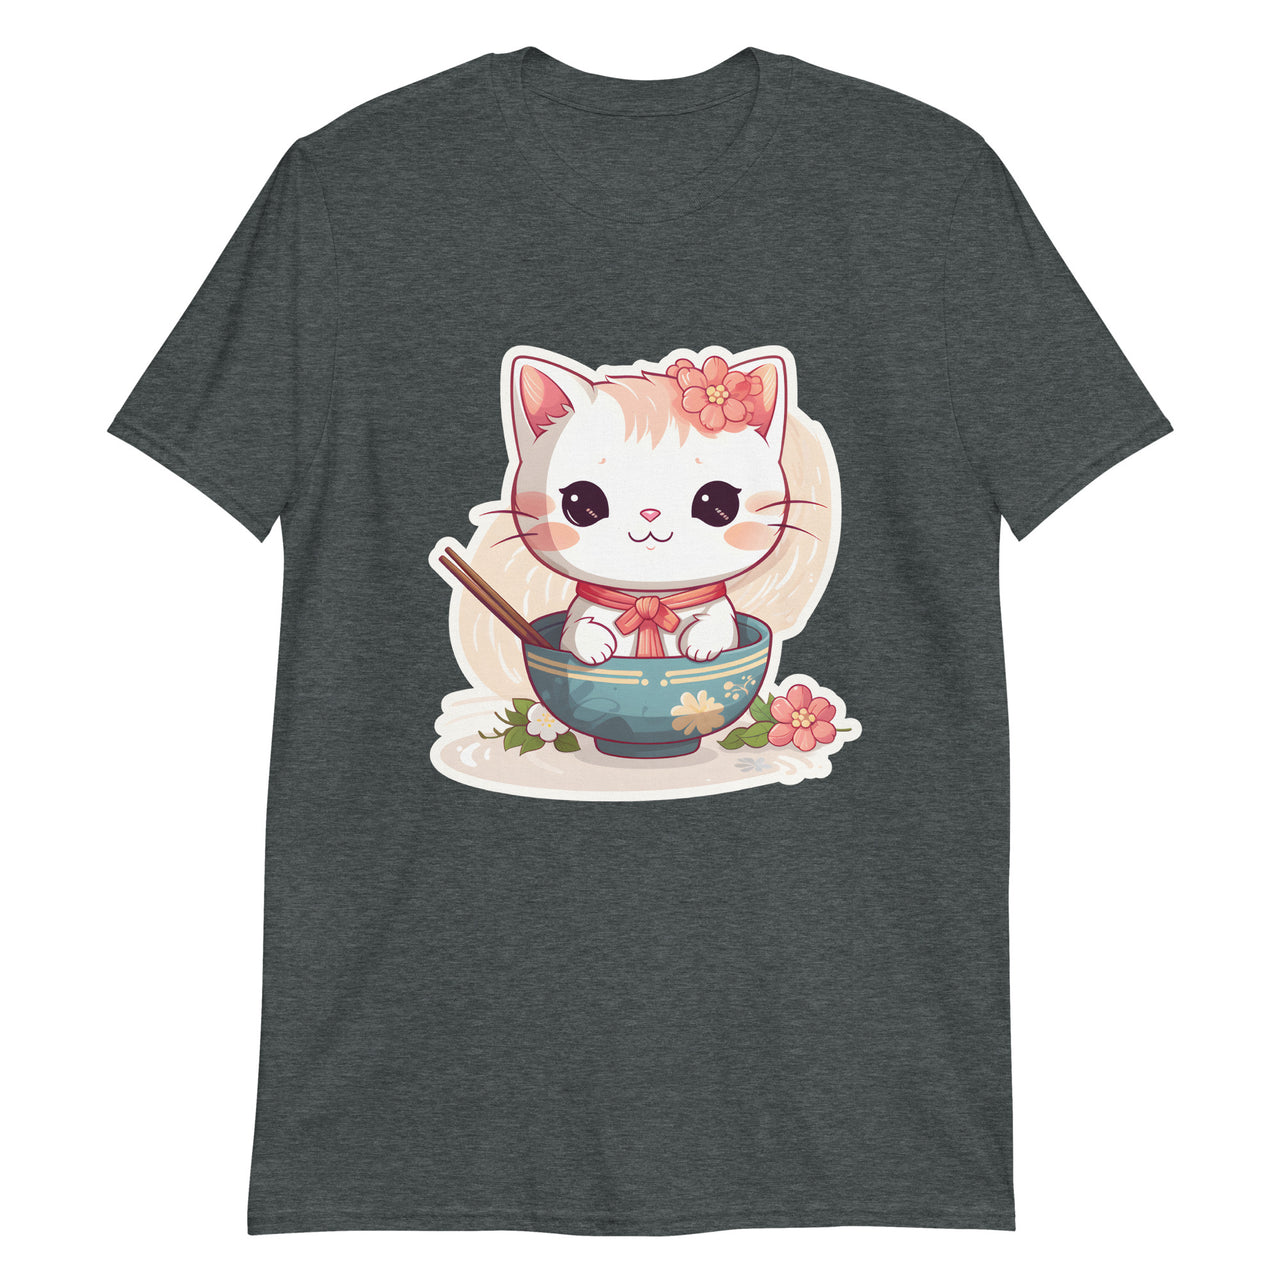 Sorry, No Ramen: Anime Cat in Bowl T-Shirt